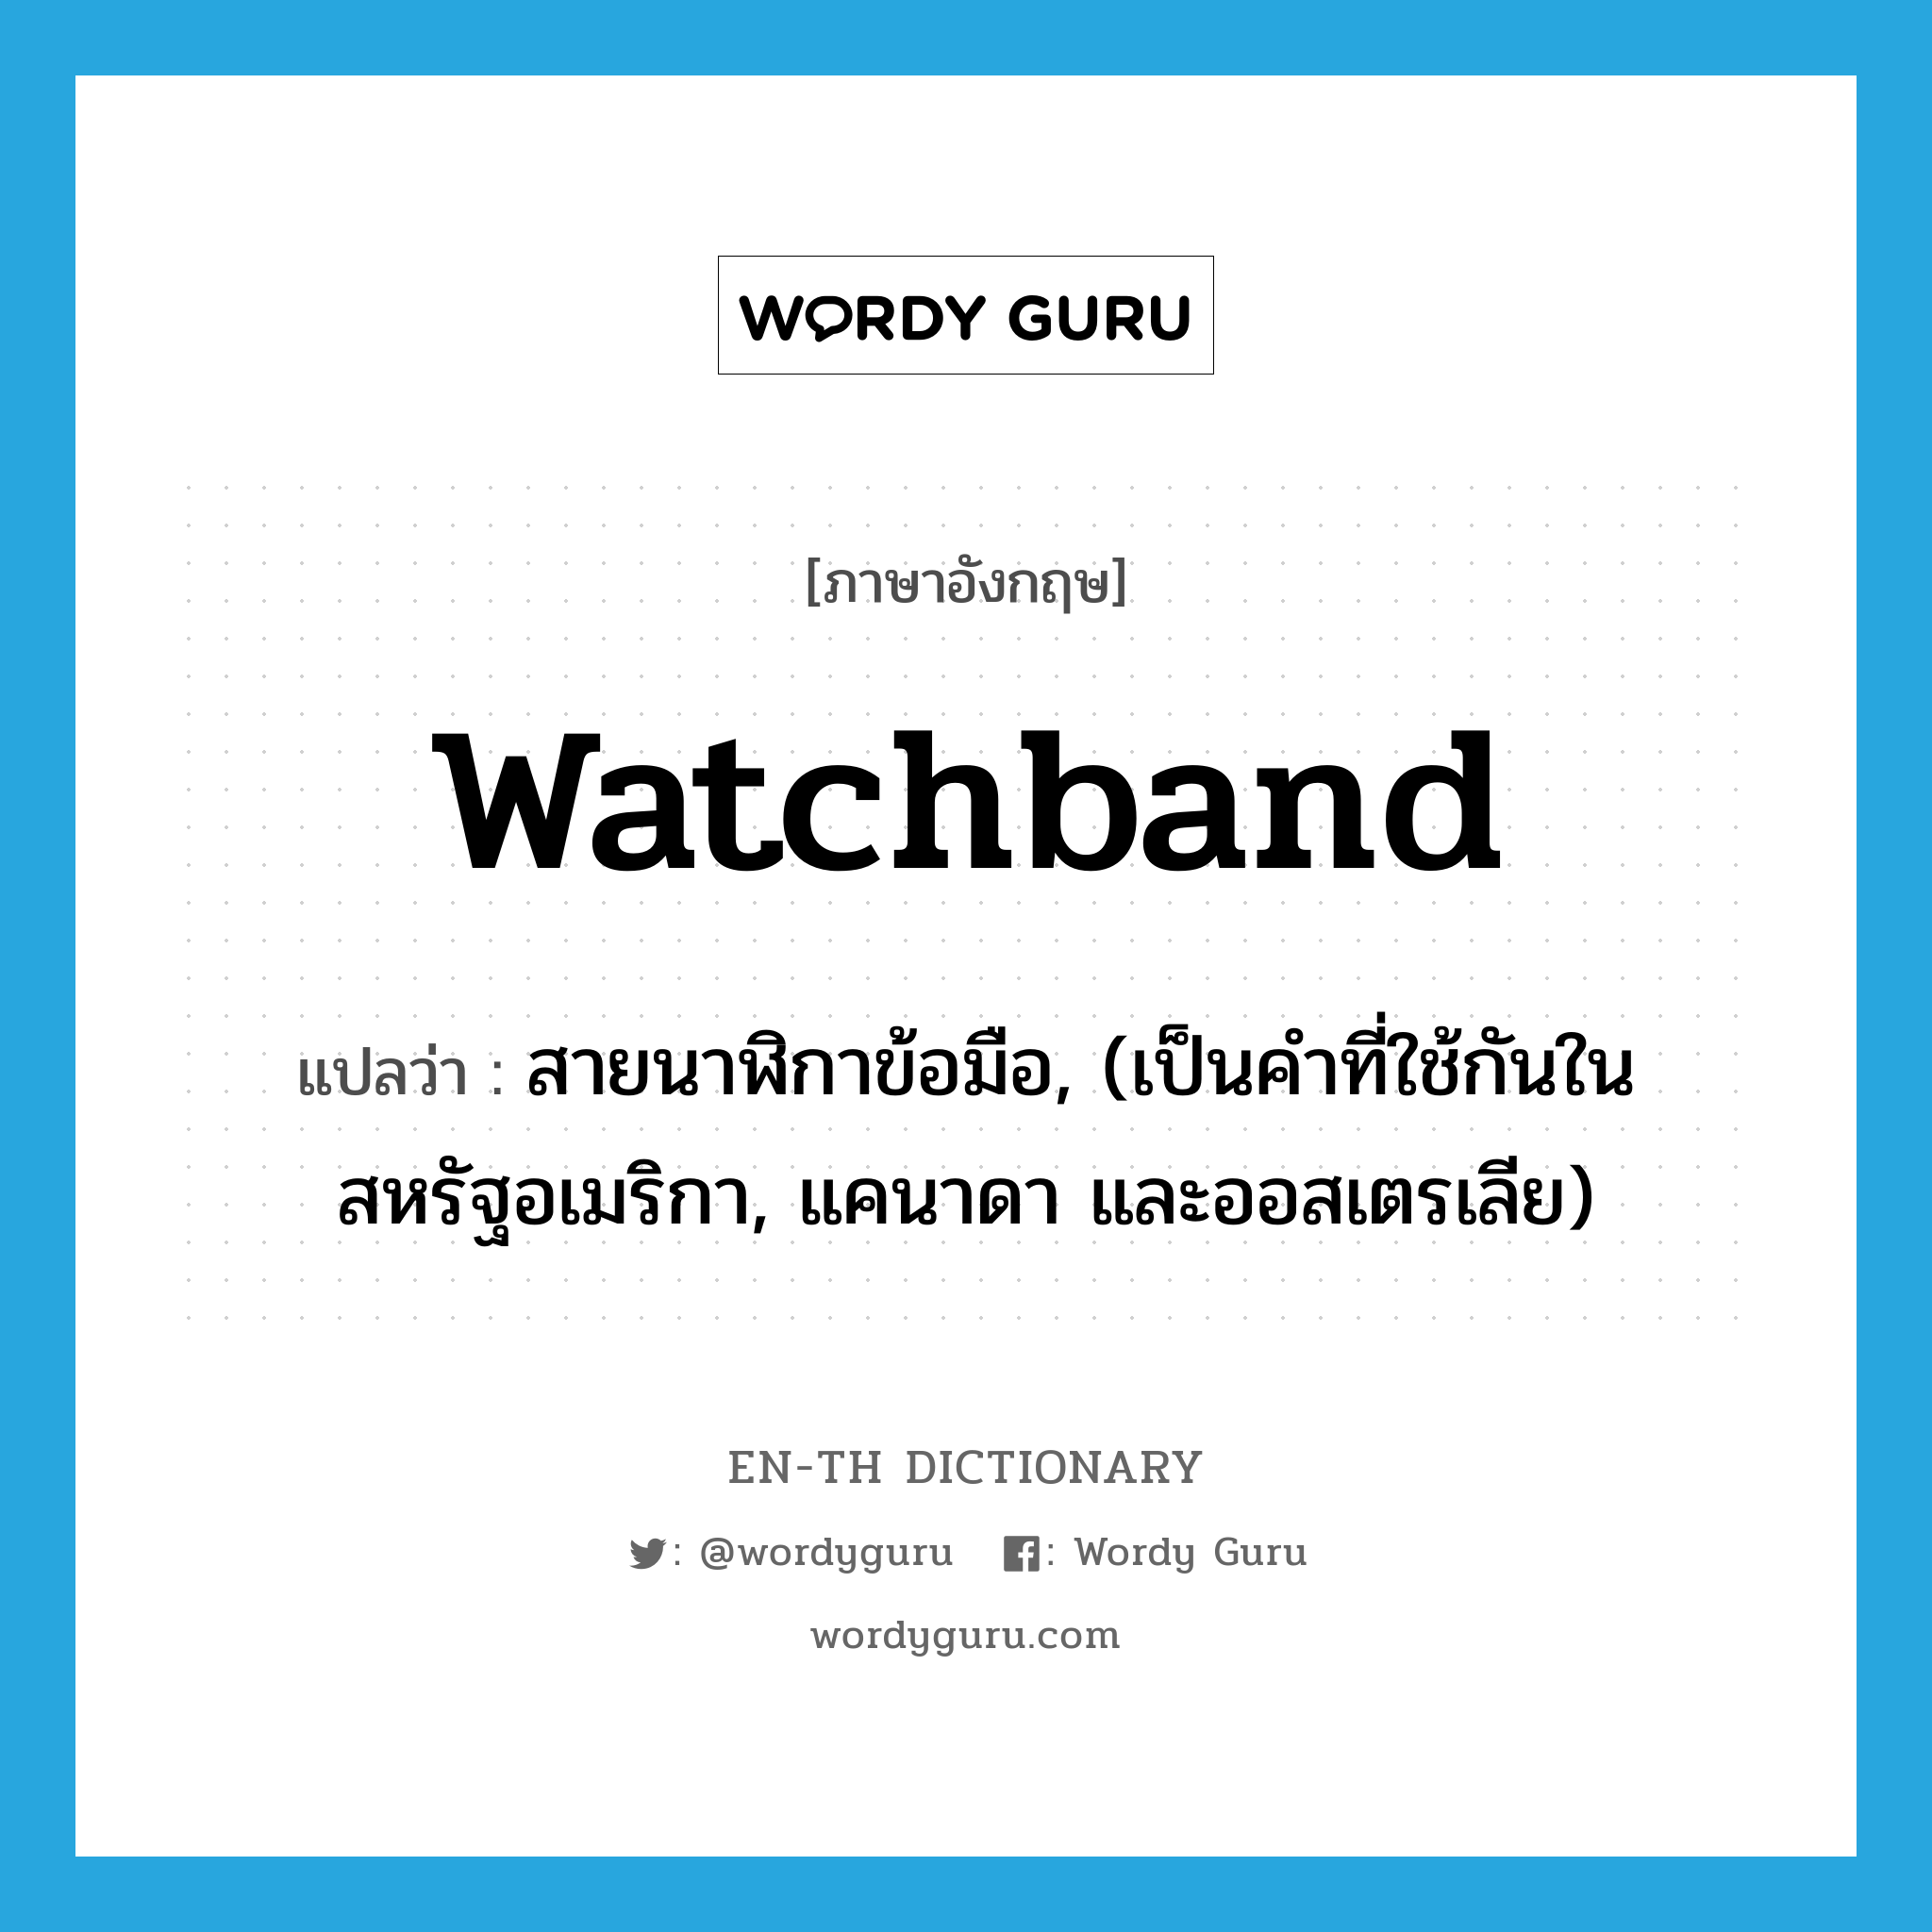 สายนาฬิกาข้อมือ, (เป็นคำที่ใช้กันในสหรัฐอเมริกา, แคนาดา และออสเตรเลีย) ภาษาอังกฤษ?, คำศัพท์ภาษาอังกฤษ สายนาฬิกาข้อมือ, (เป็นคำที่ใช้กันในสหรัฐอเมริกา, แคนาดา และออสเตรเลีย) แปลว่า watchband ประเภท N หมวด N